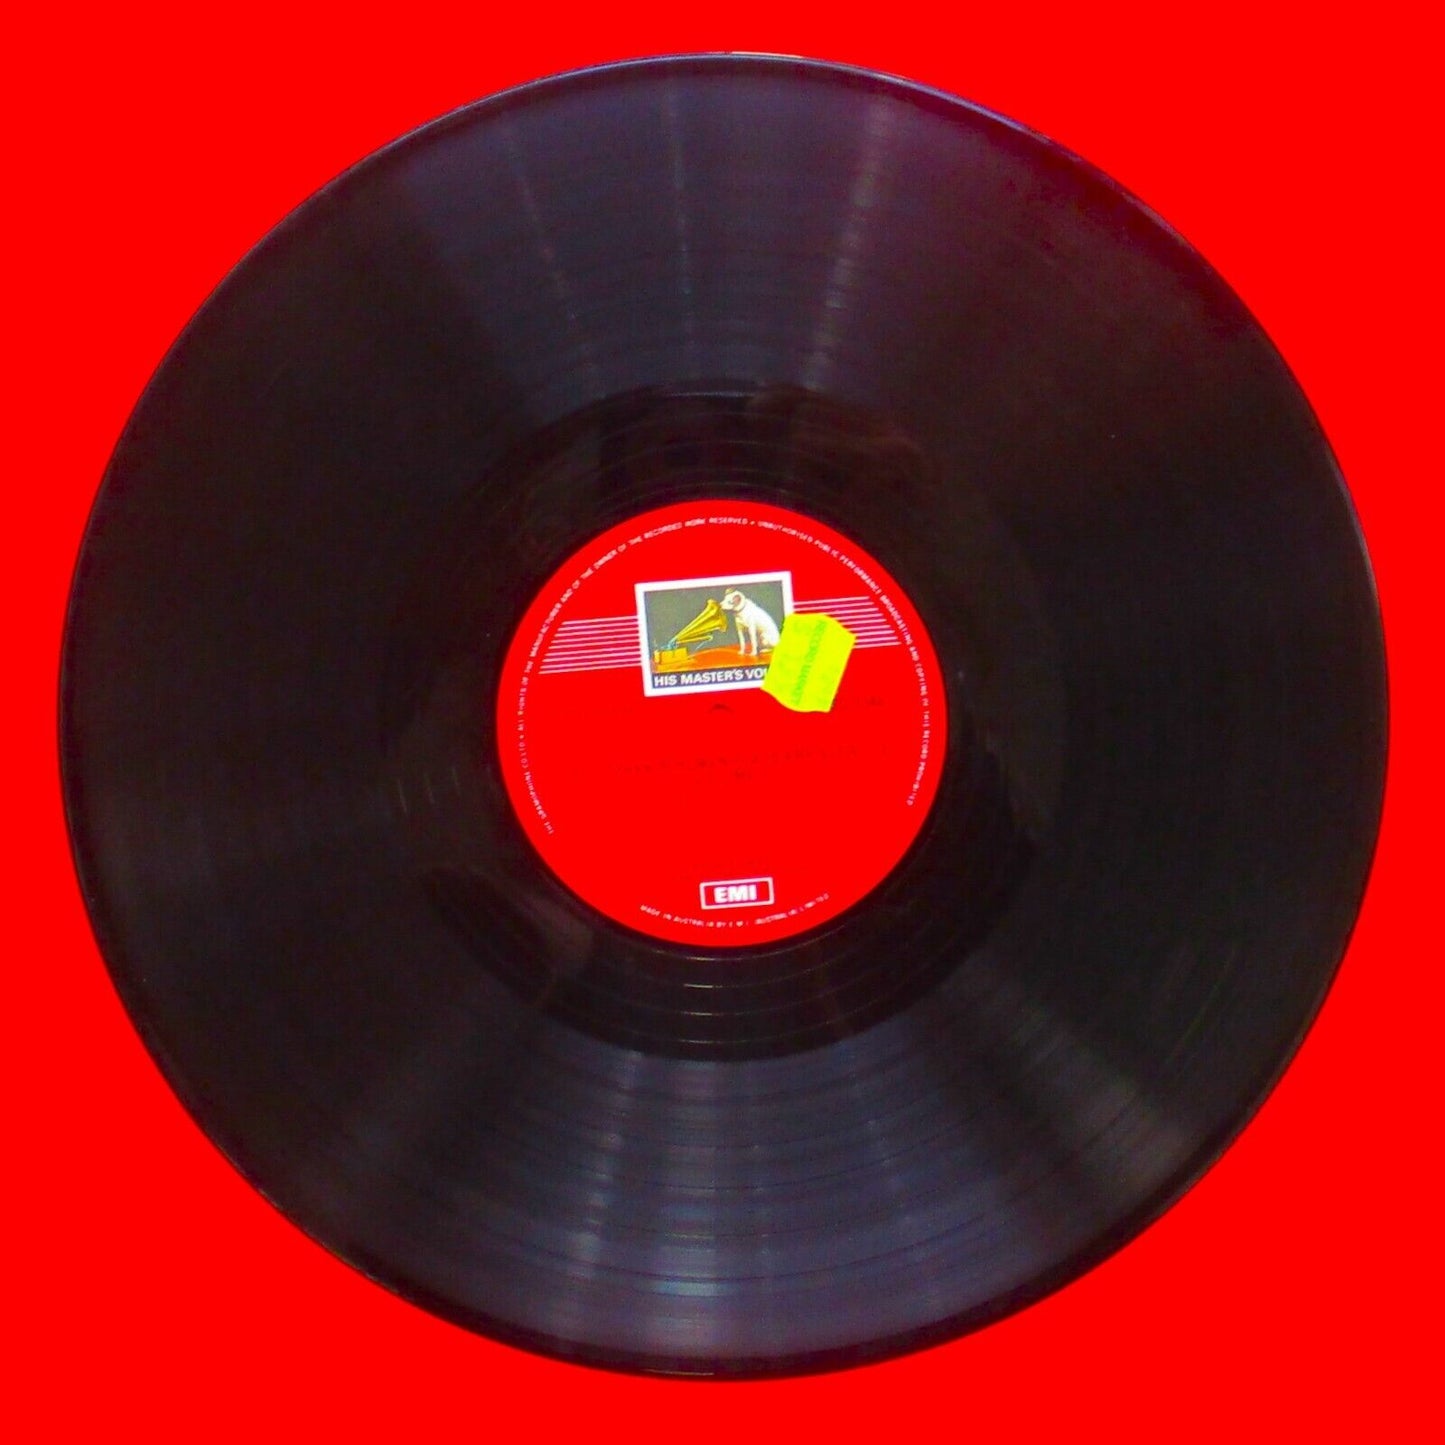 Itzhak Perlman Plays Fritz Kreisler Volume 2 Vinyl Album LP Australian Pressing